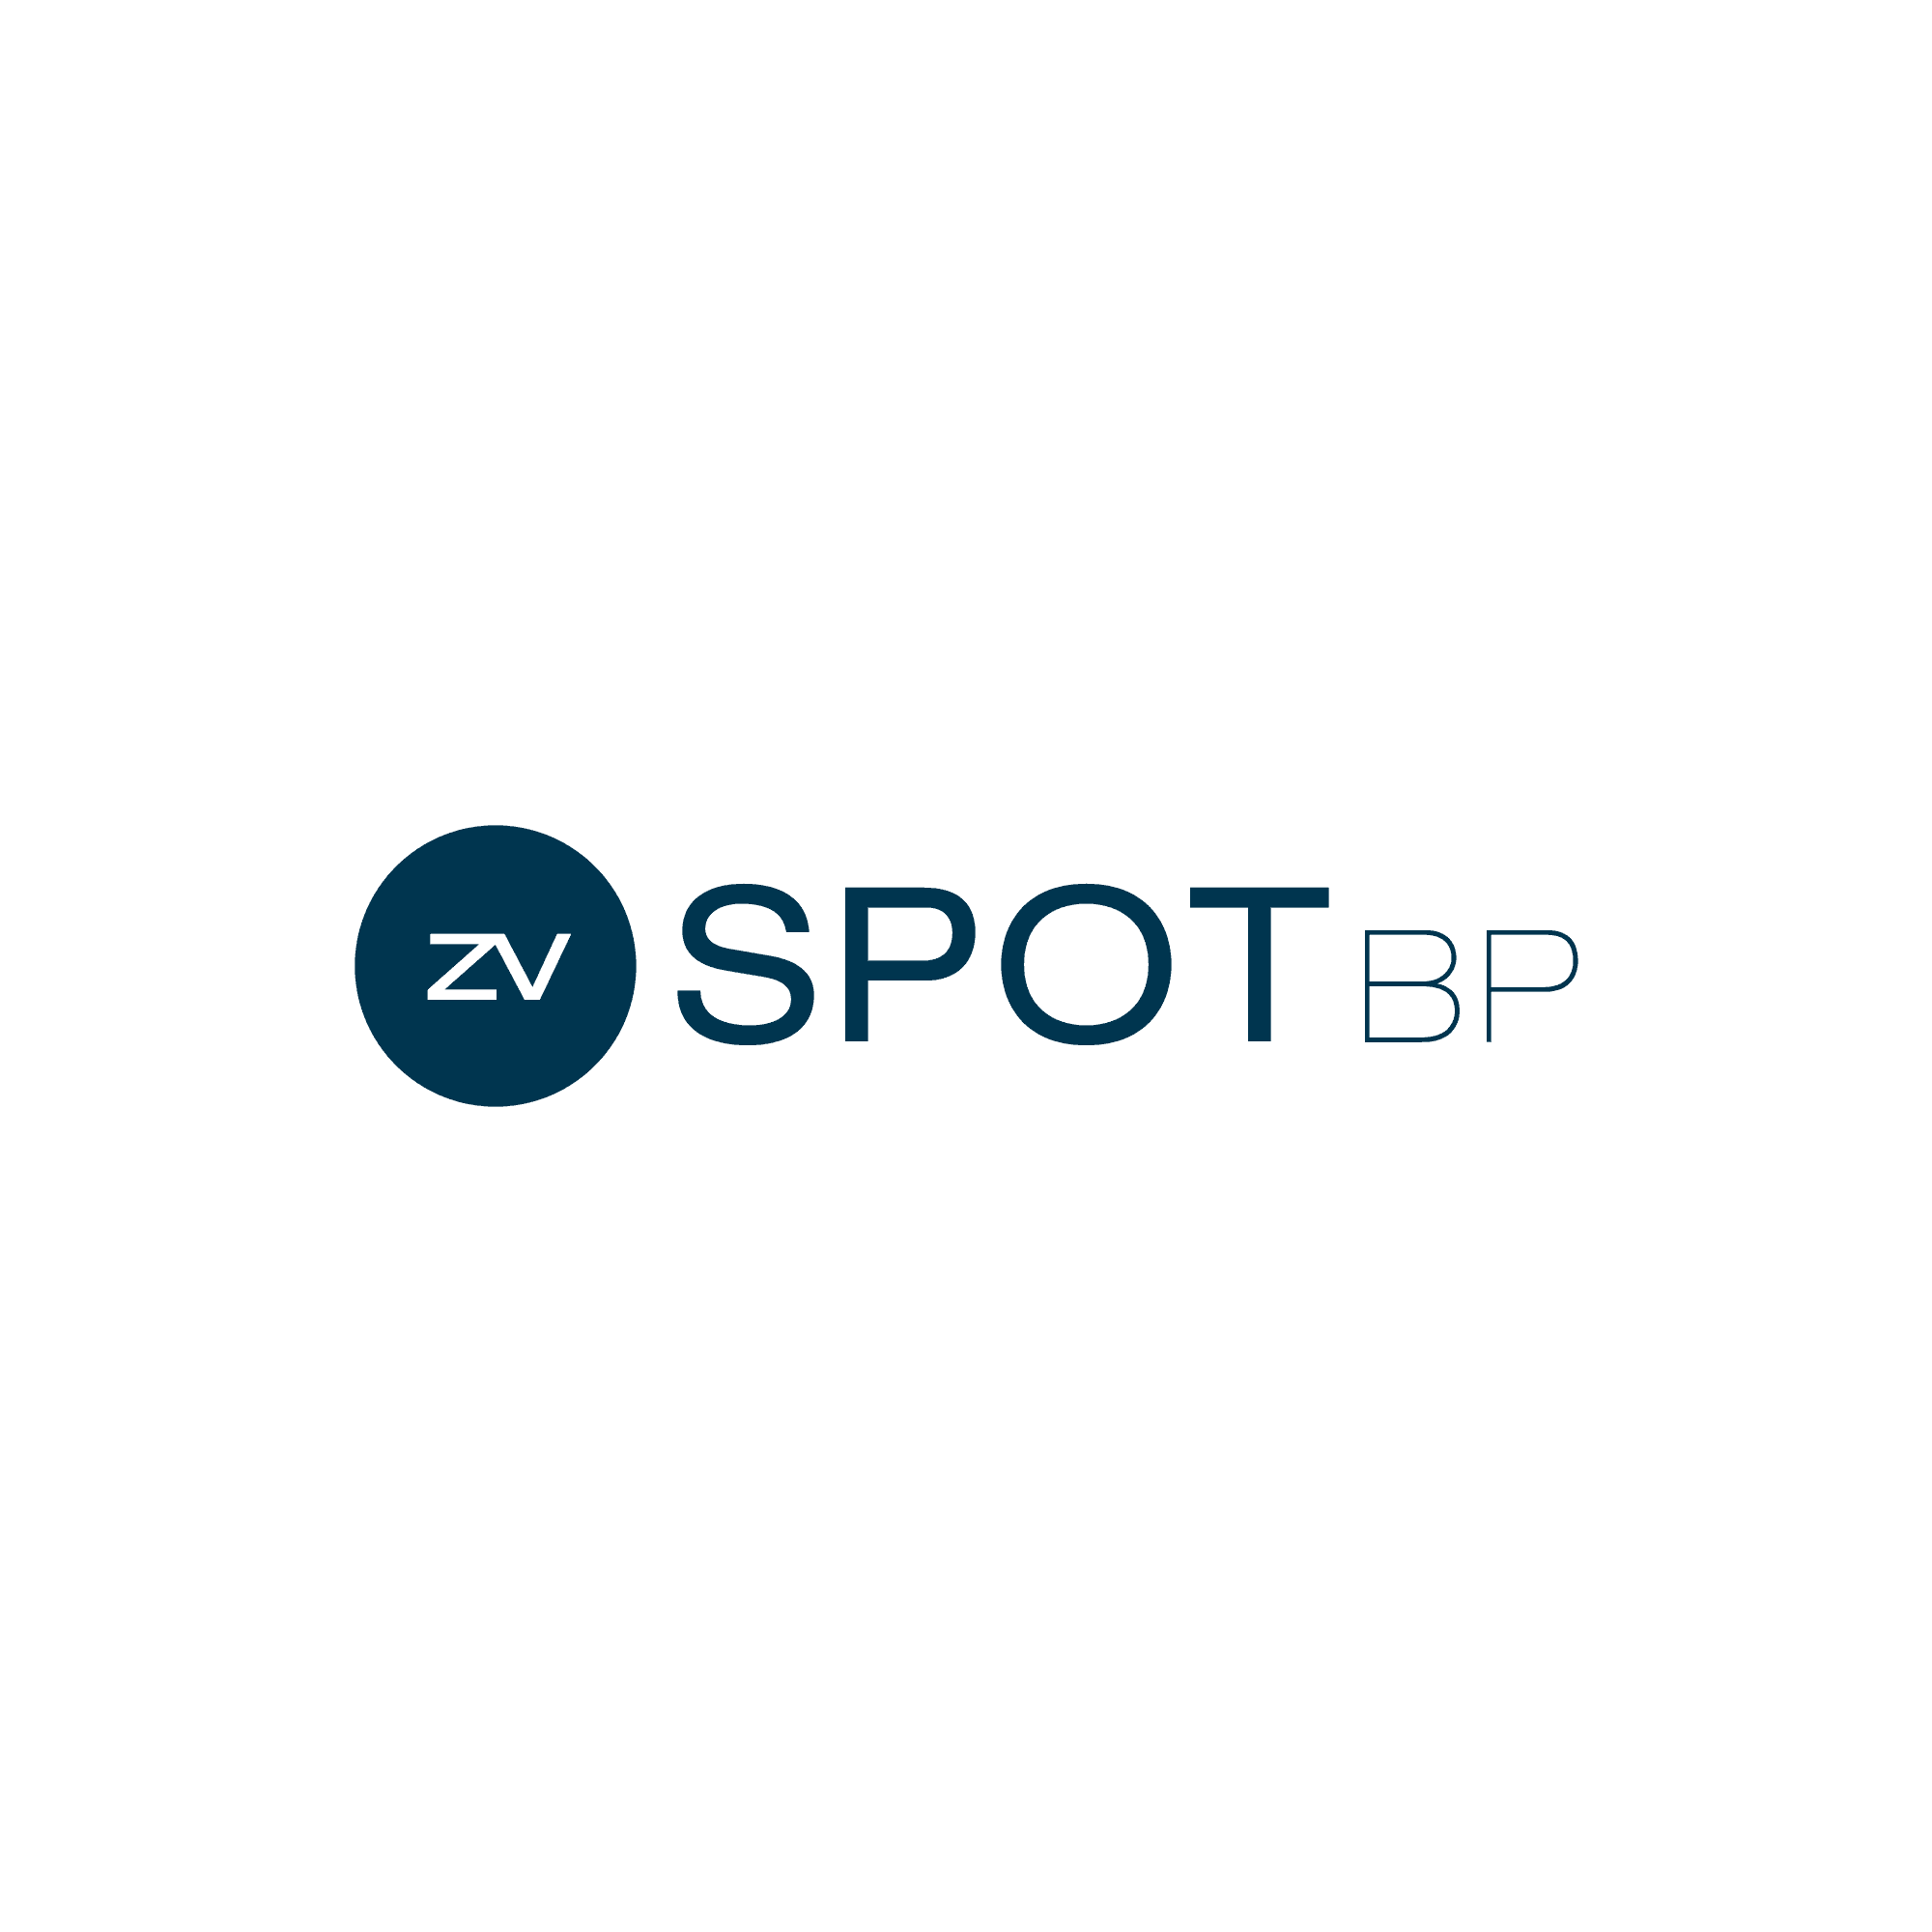 Es ist das Logo von SPoT für Geschäftspartner zu sehen.